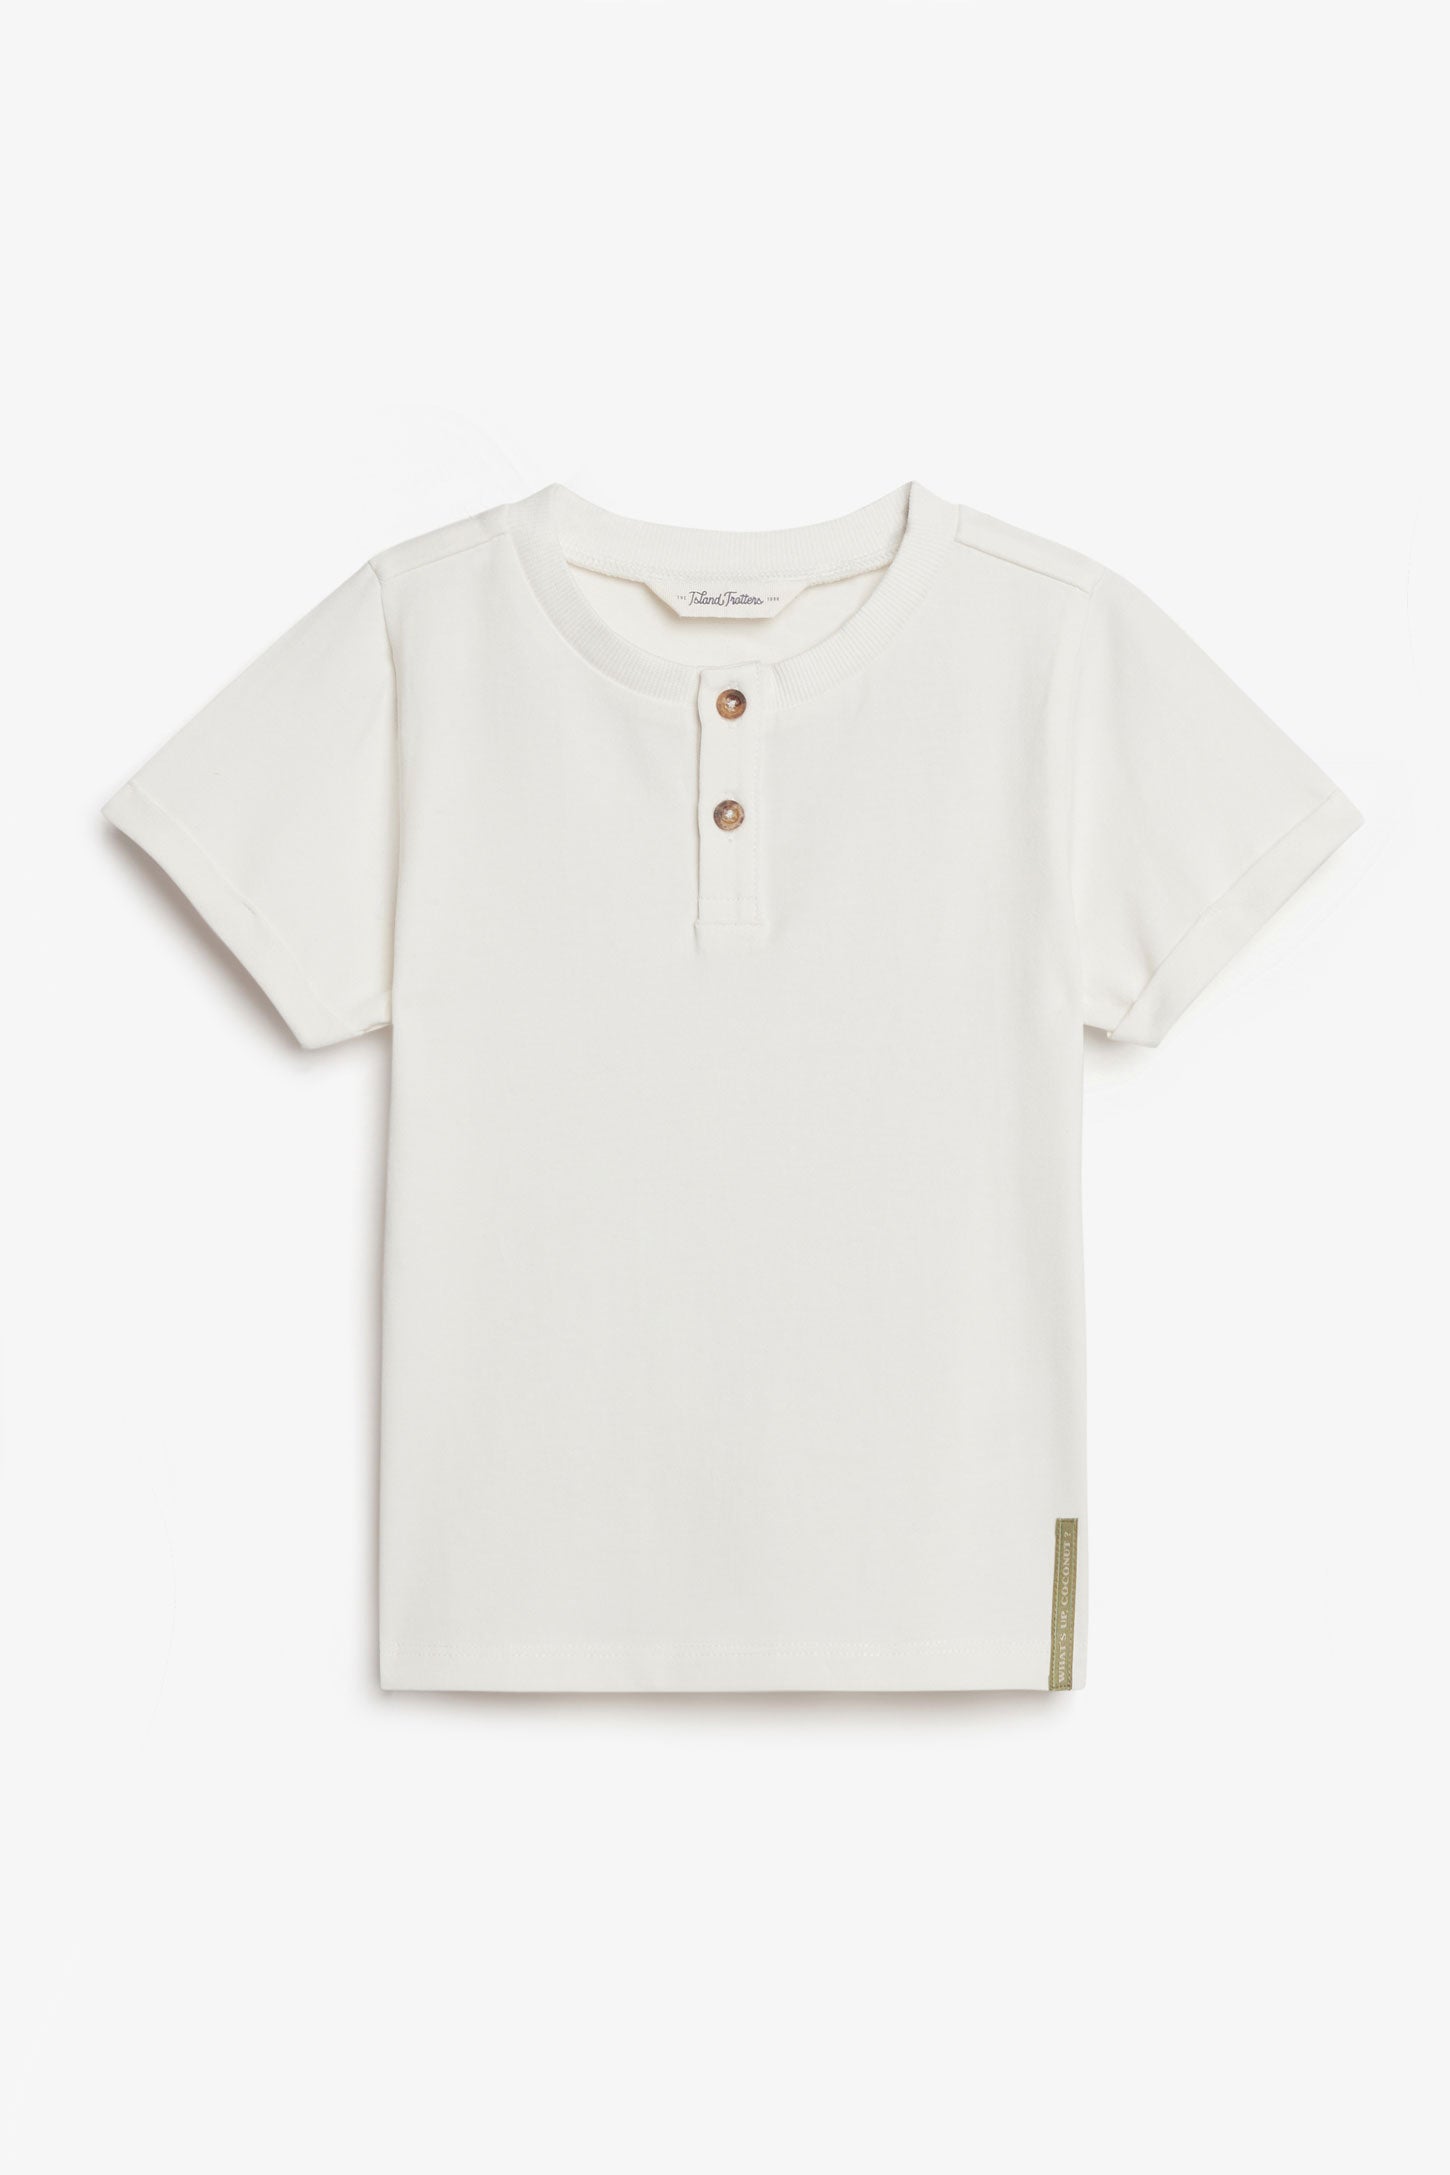 T-shirt henley en coton, 2T-3T - Bébé garçon && BLANC